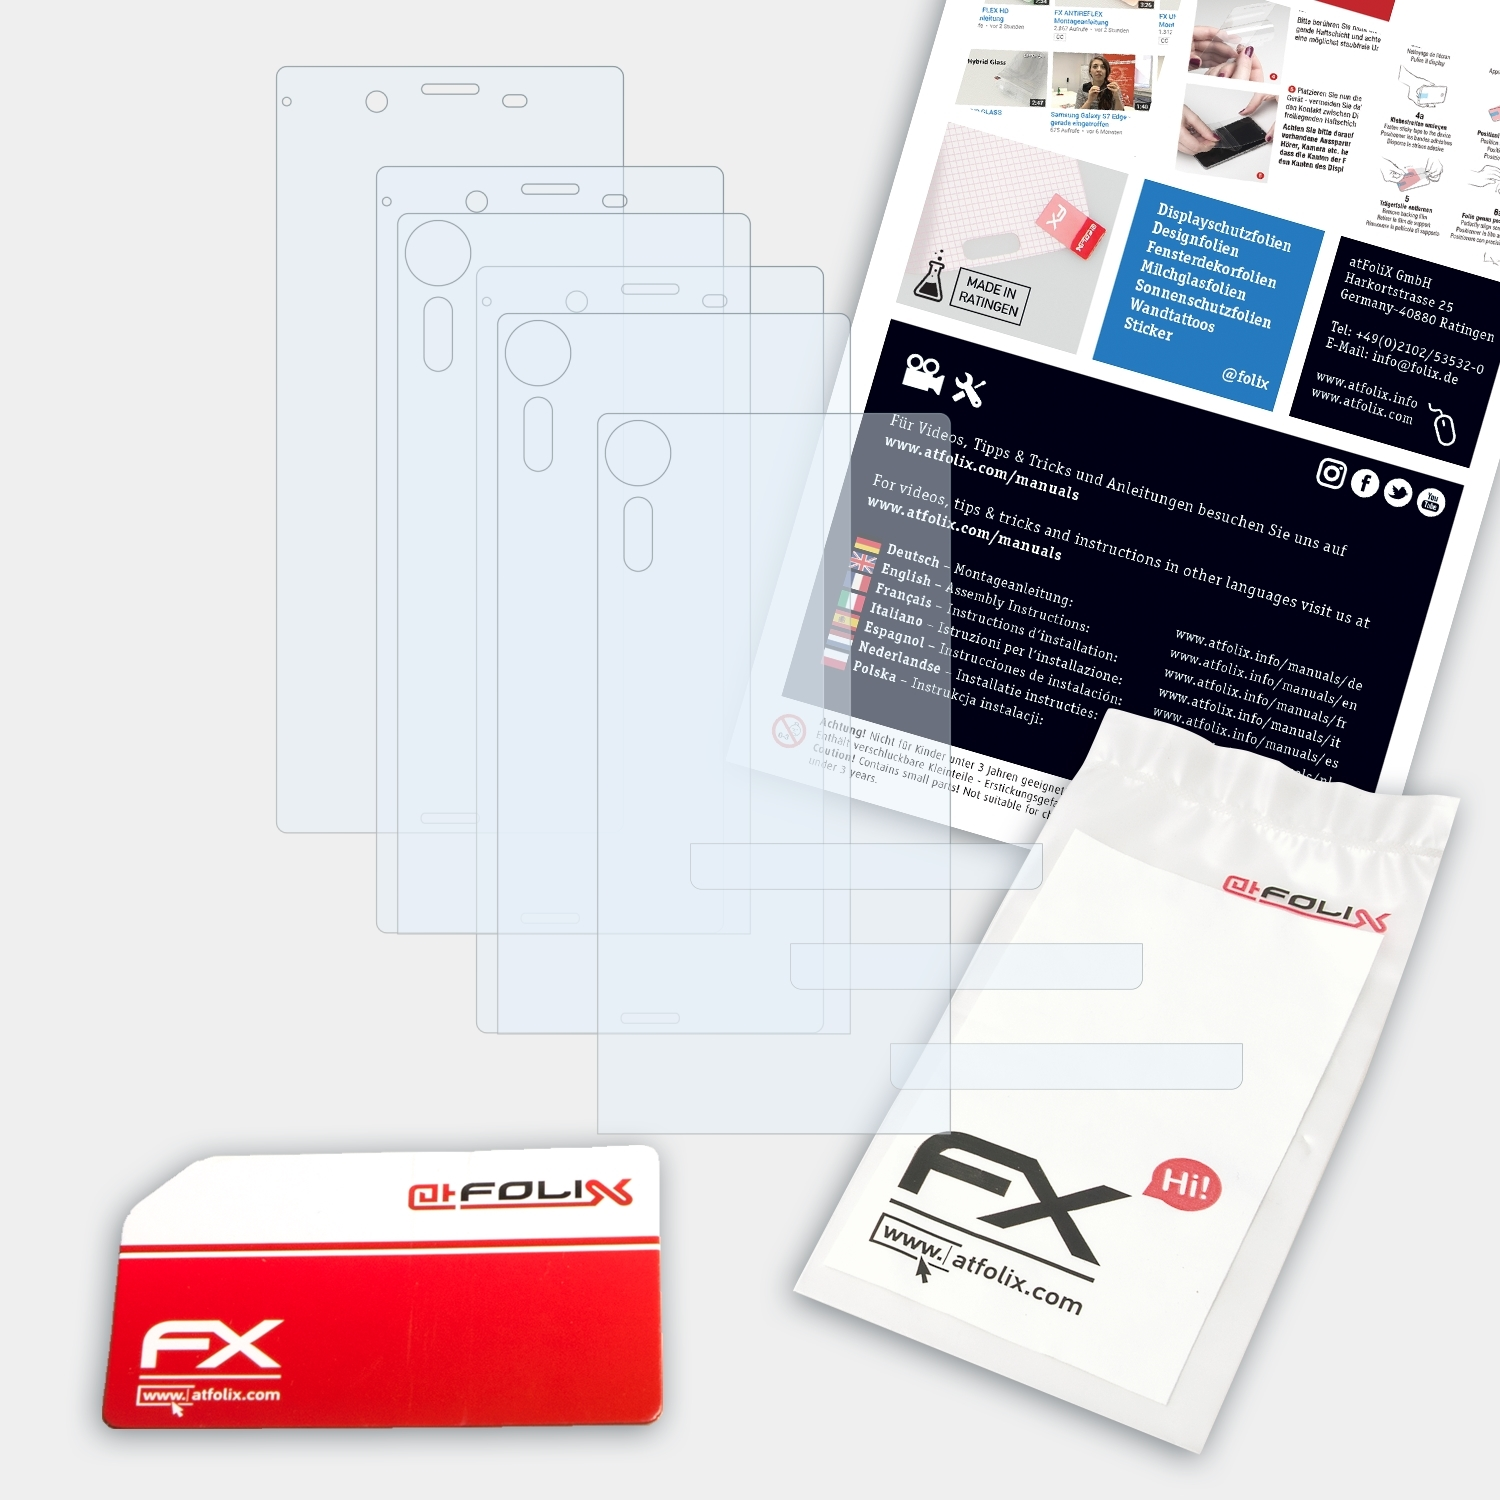 ATFOLIX 3x FX-Clear Displayschutz(für Sony Xperia XZs)